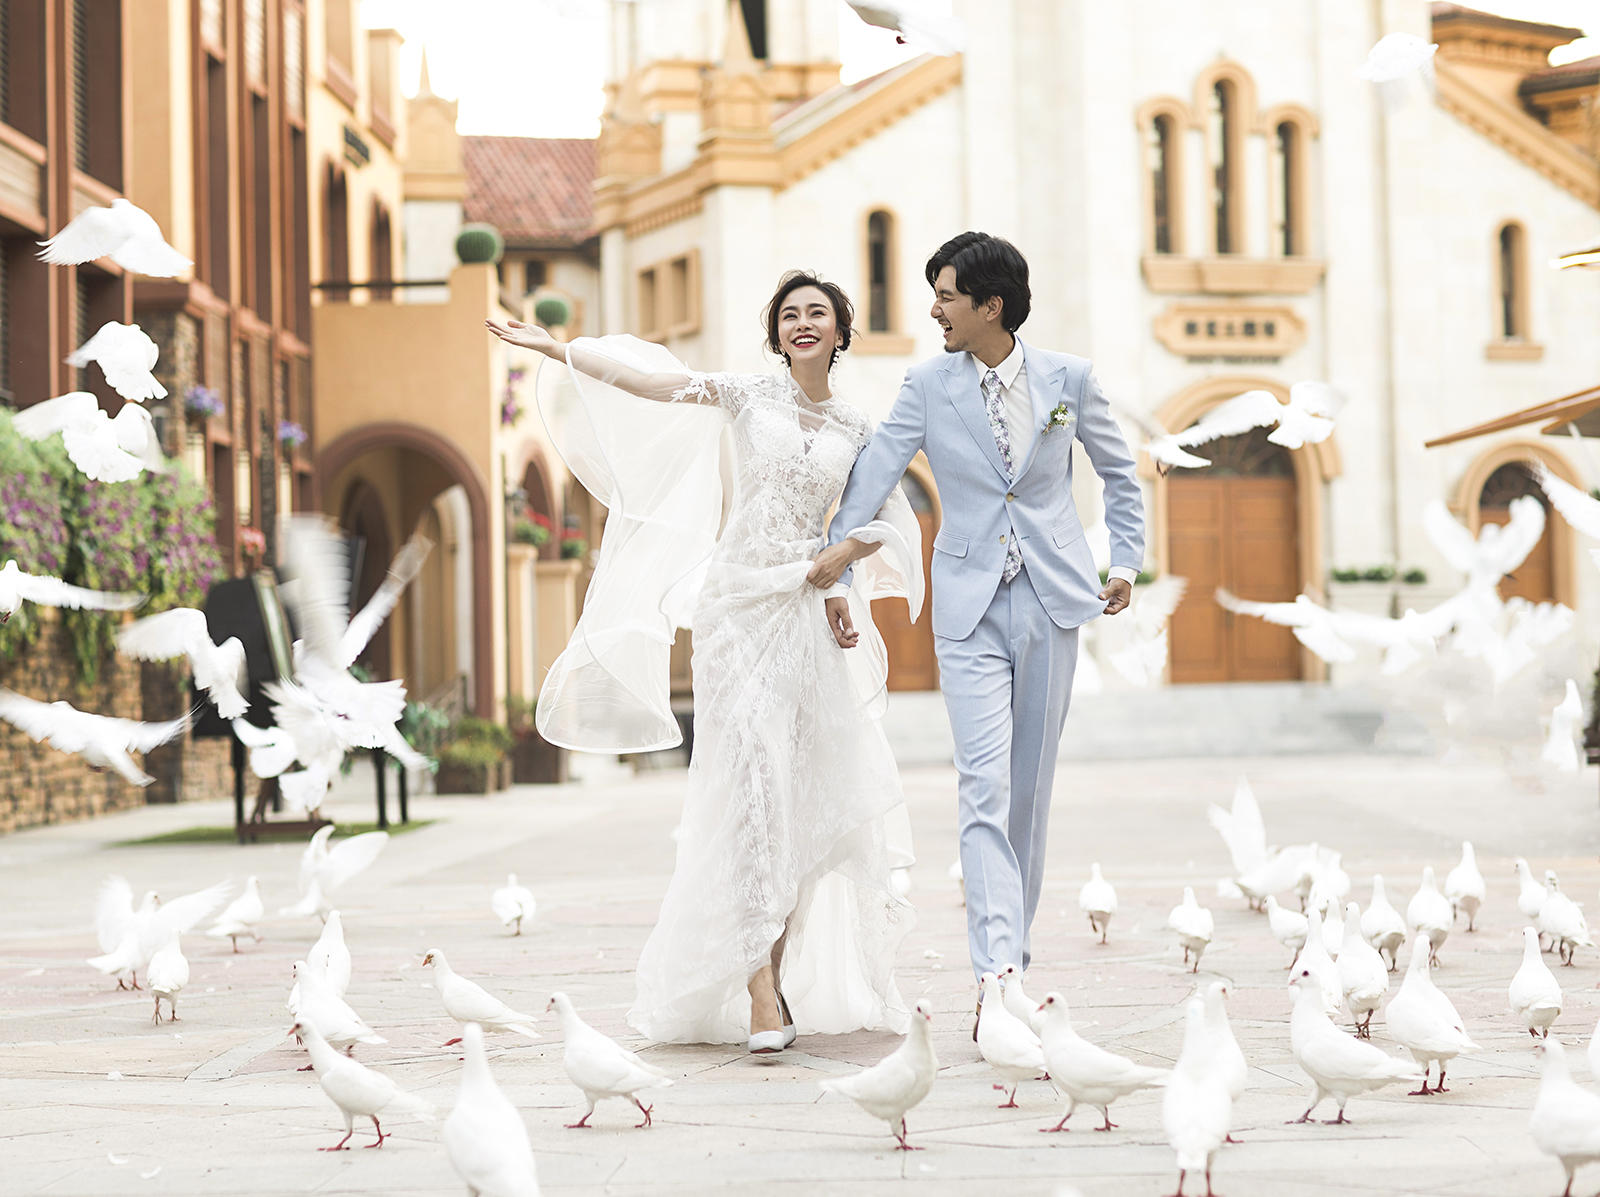 繆斯影像原價6899元攝影套系·歐式最新婚紗照